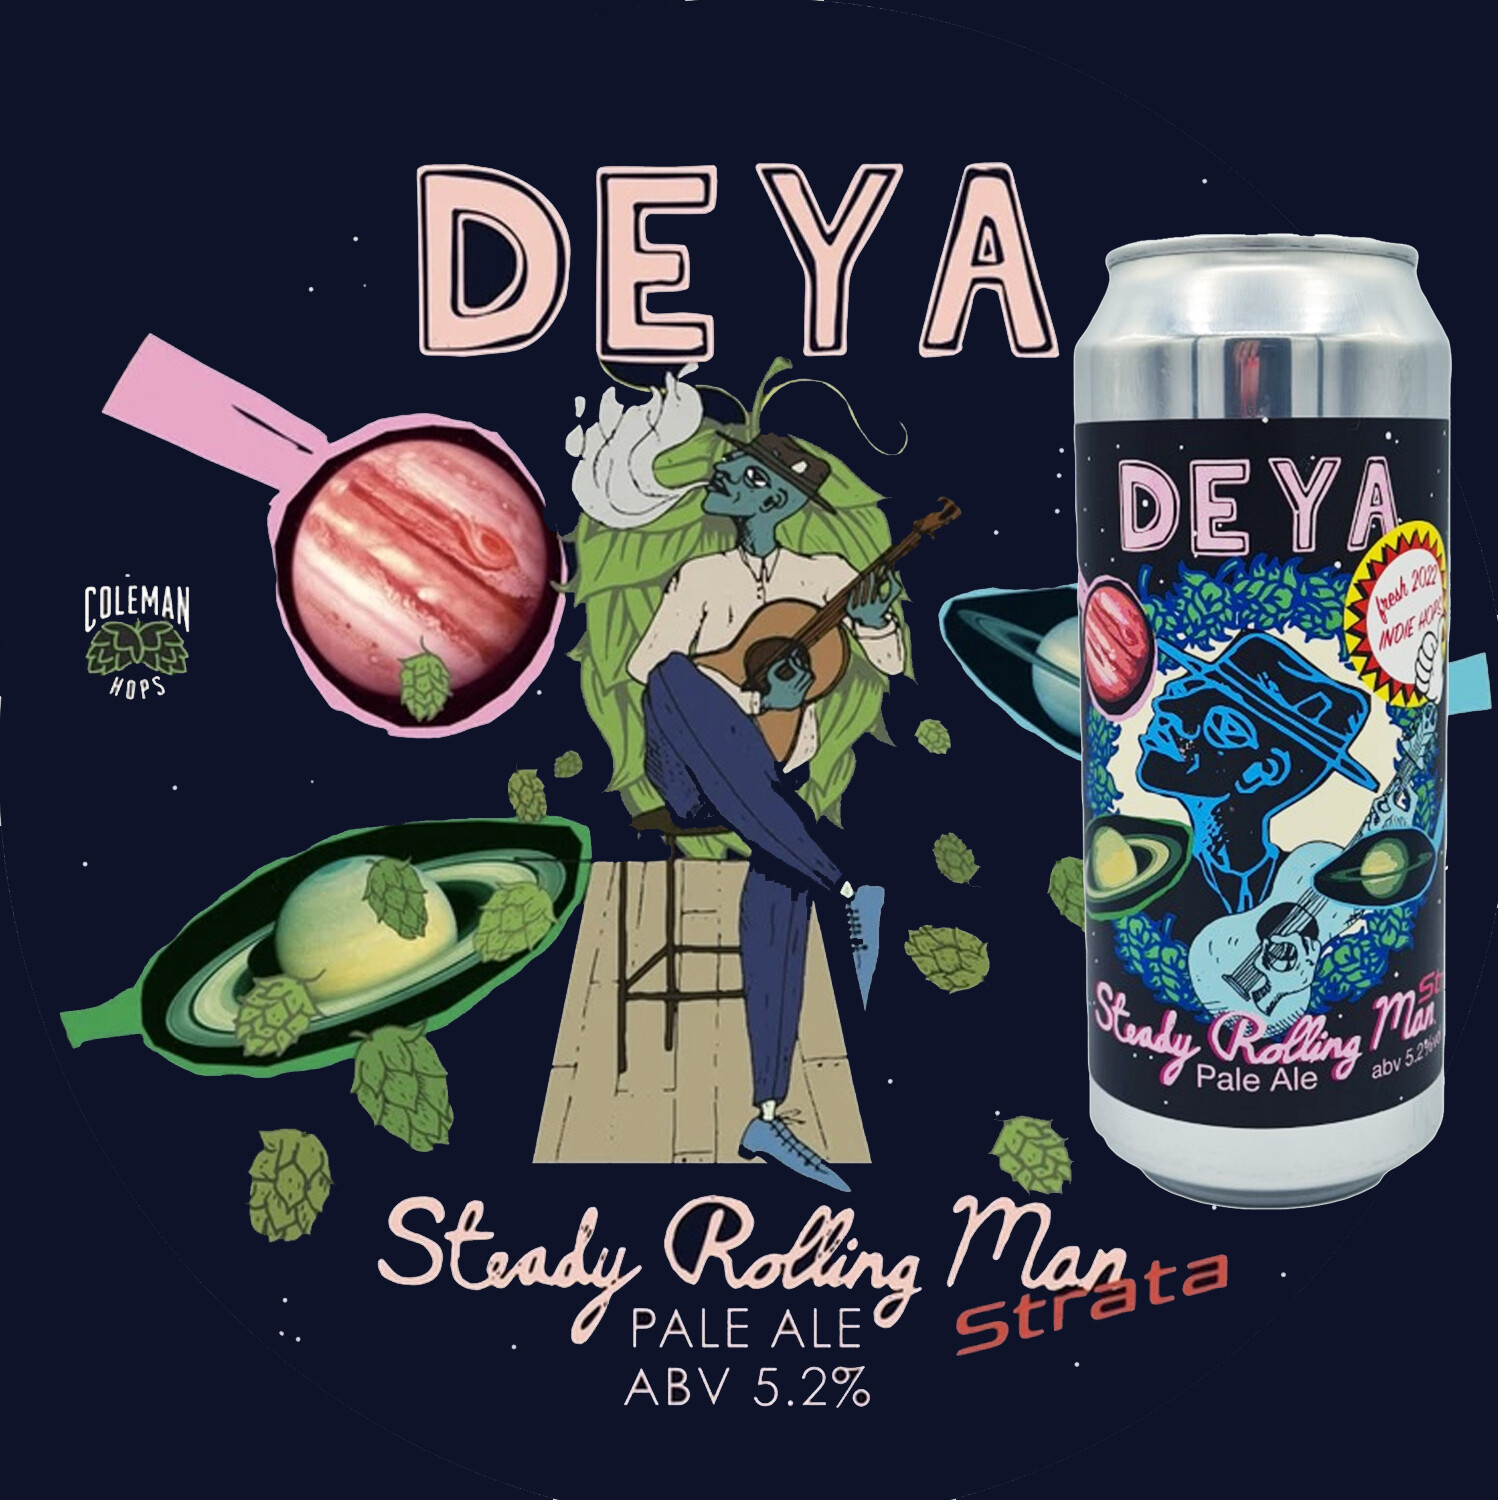 Deya Strata Edition Steady Rolling Man Pale Ale